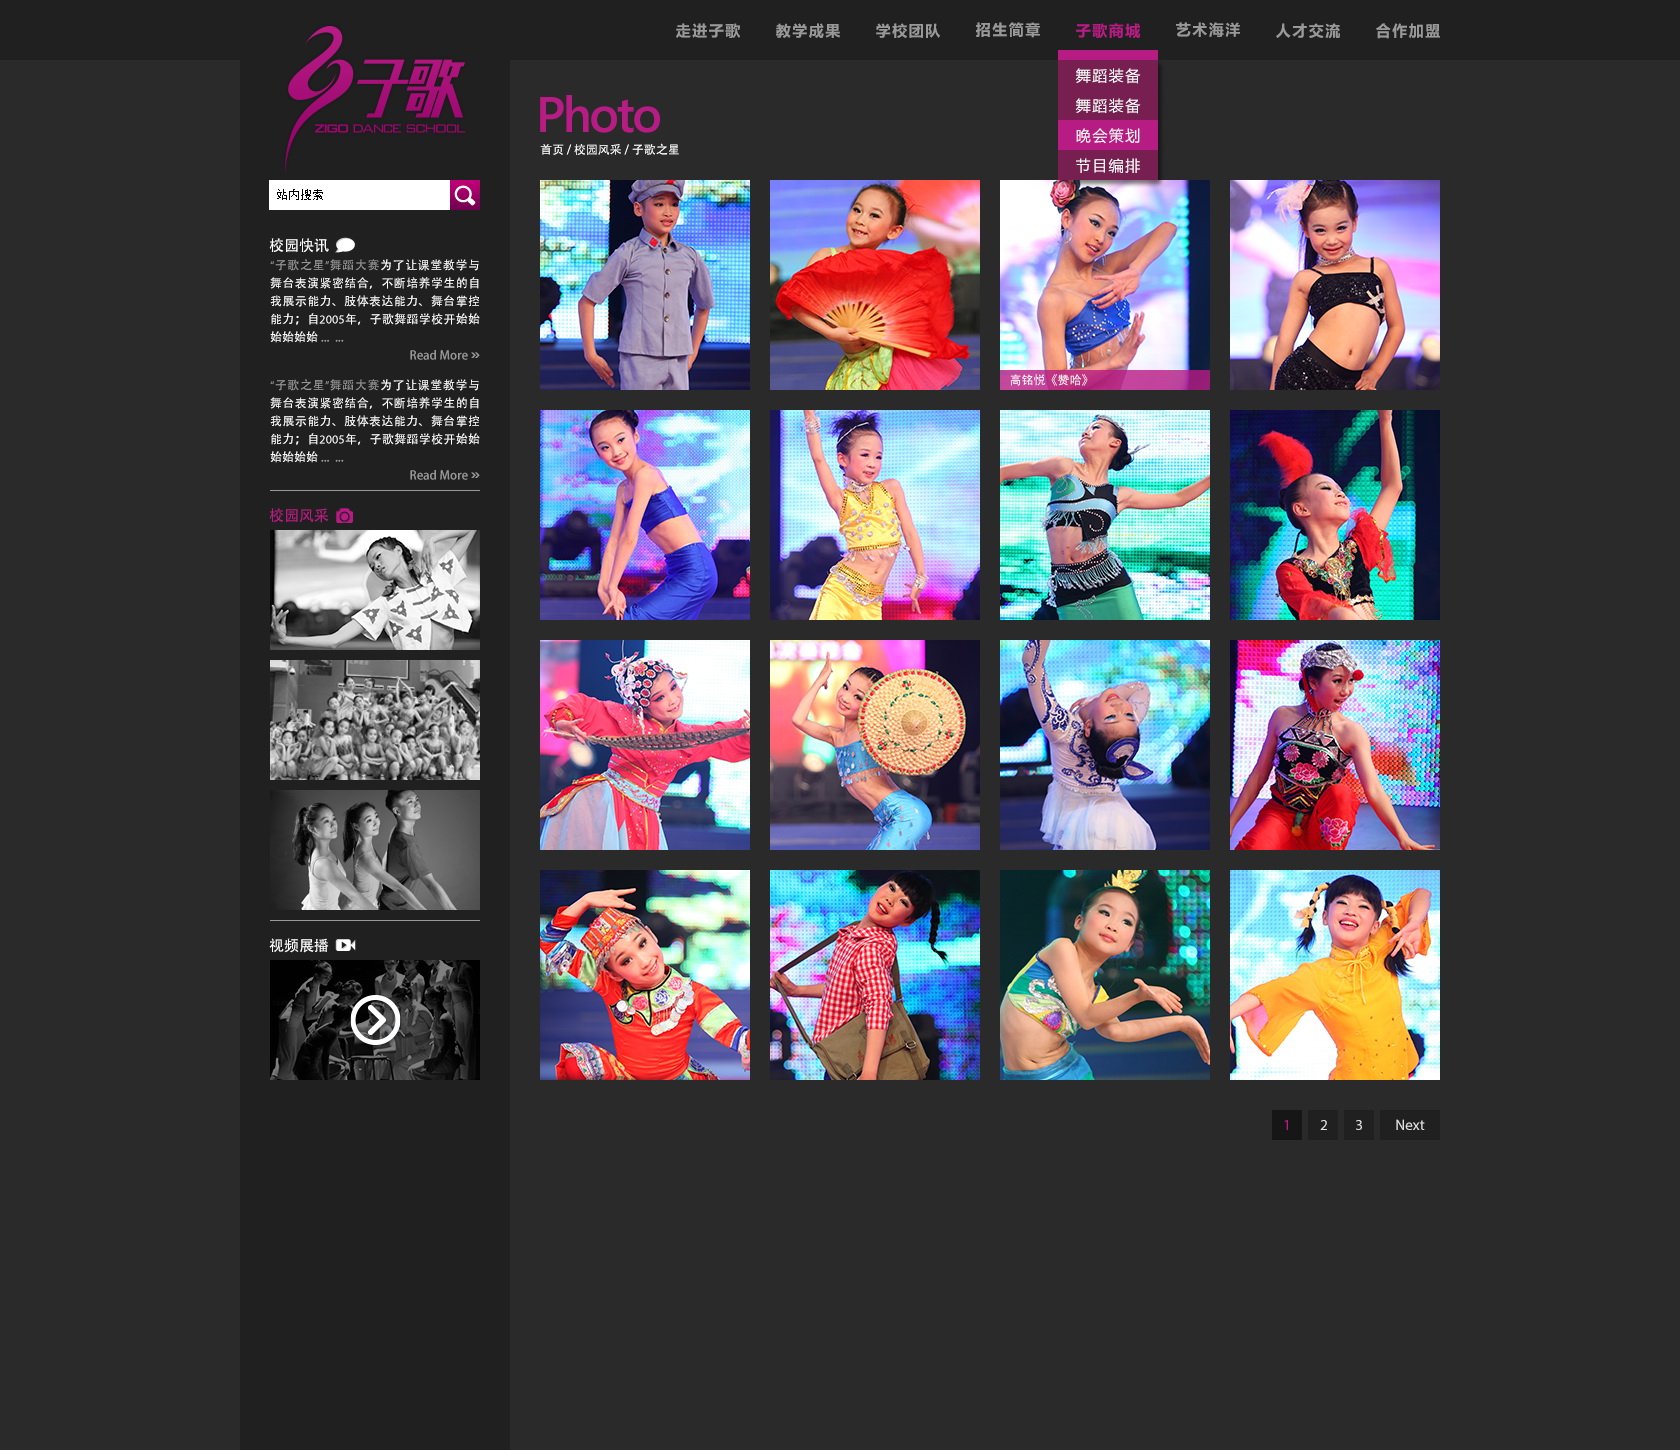 子歌舞蹈网站列表页设计稿